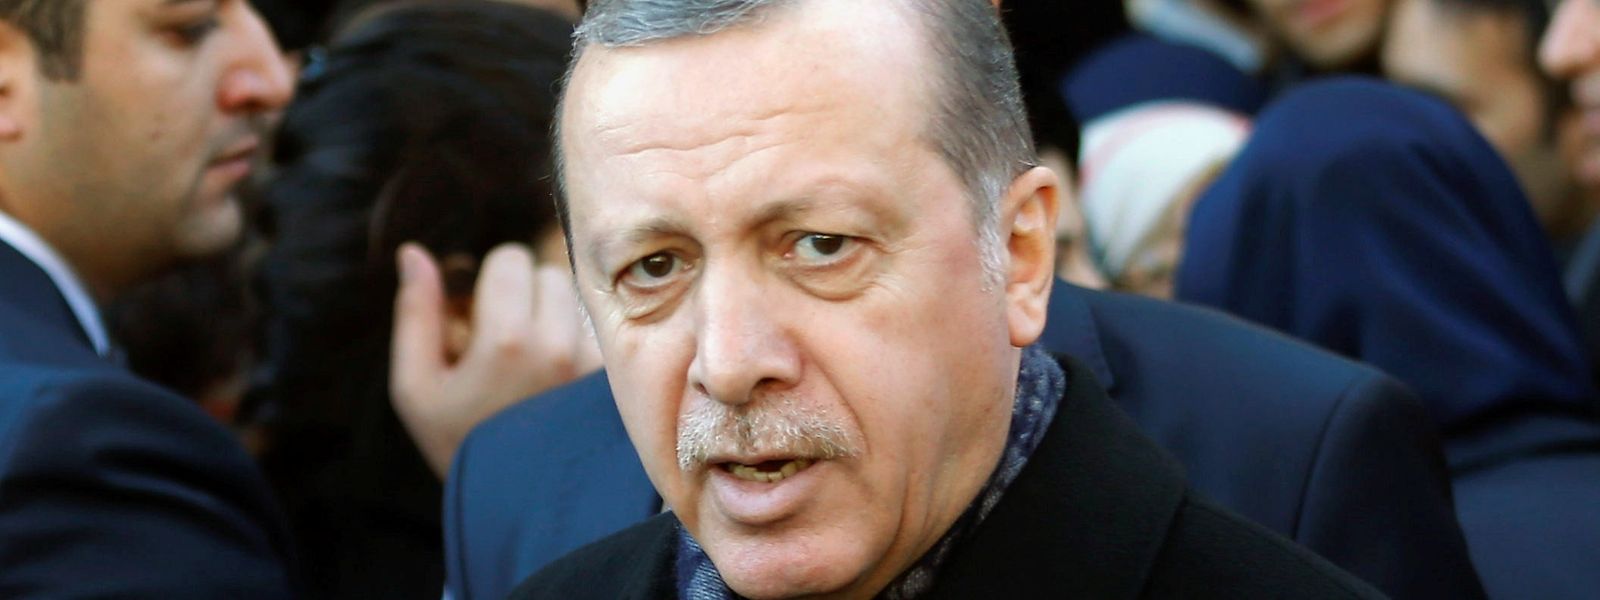 Präsident Recep Tayyip Erdogan will "so lange wie nötig" am Ausnahmezustand festhalten.